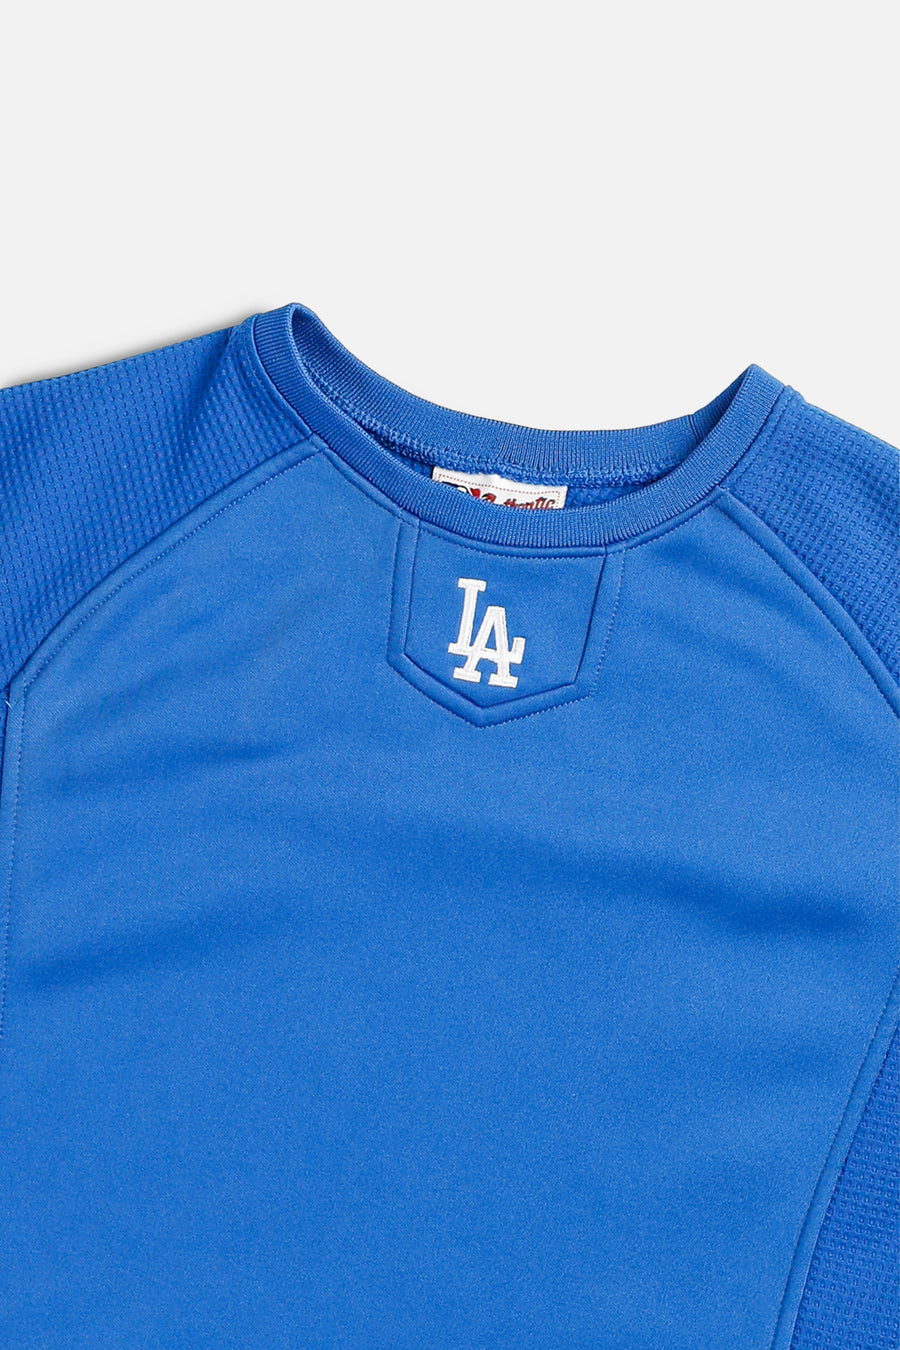 Vintage LA Dodgers MLB Long Sleeve Tee - M